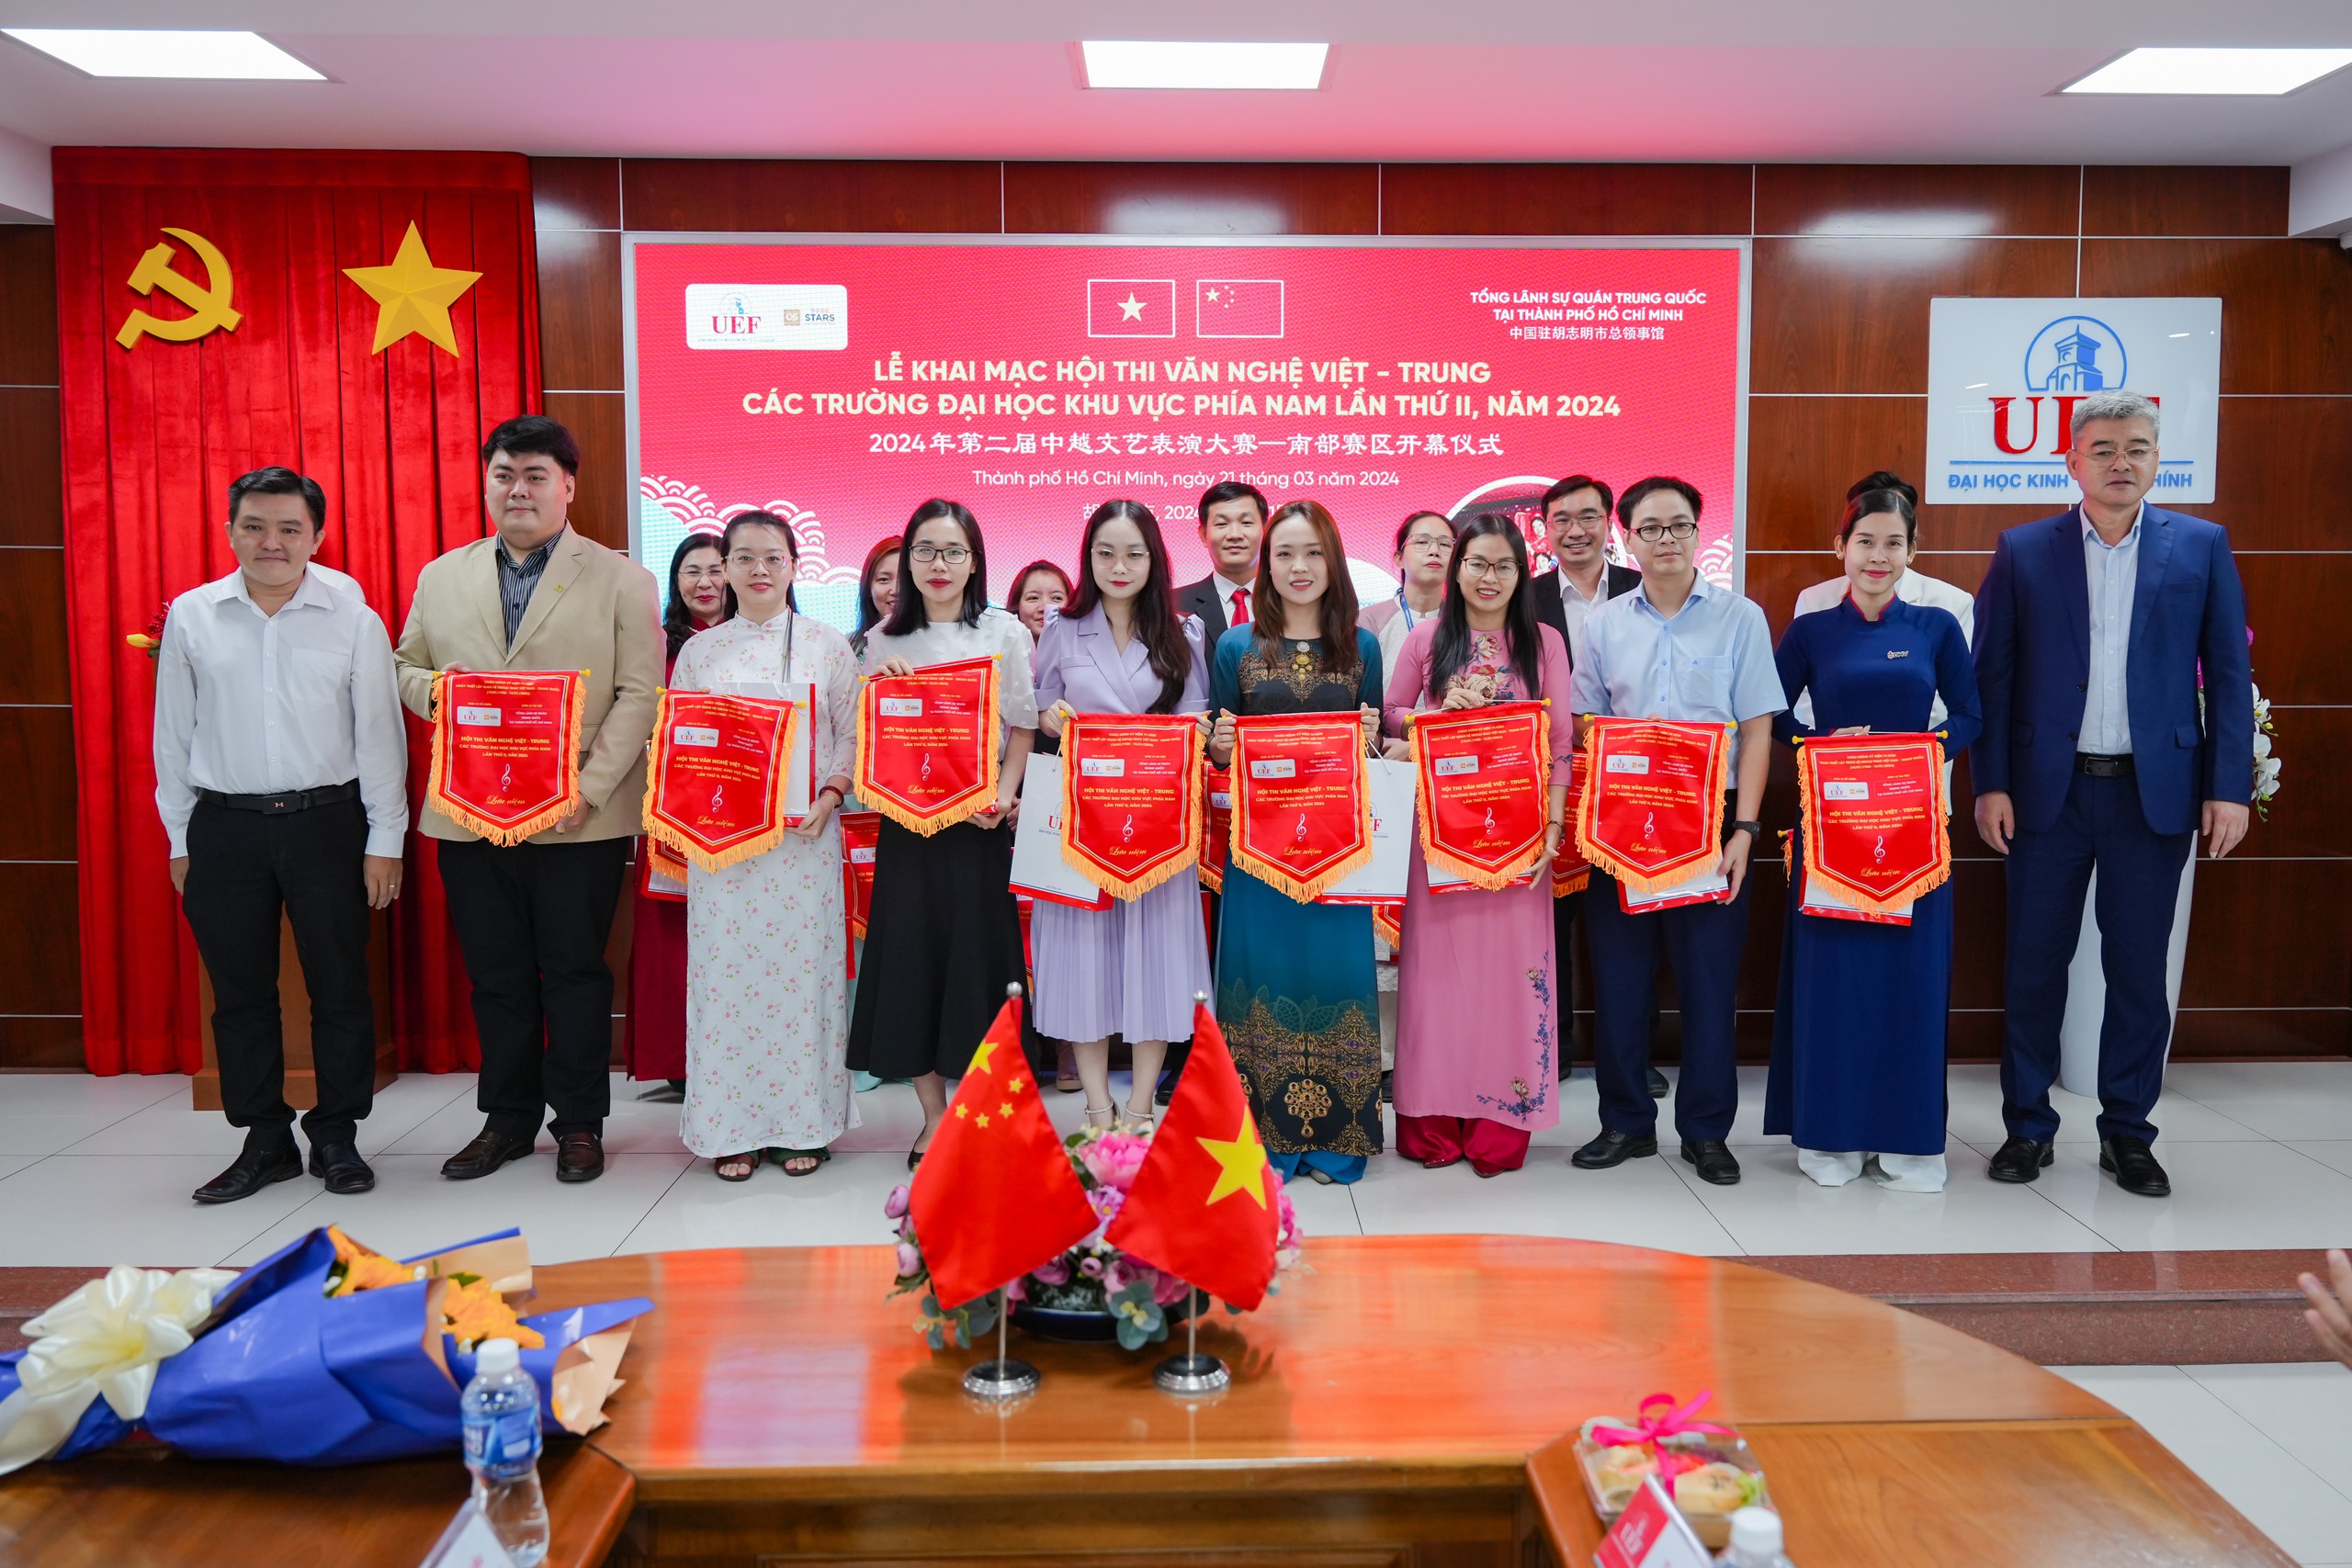 Hội thi văn nghệ Việt – Trung thu hút gần 20 trường đại học khu vực phía Nam tham gia- Ảnh 1.